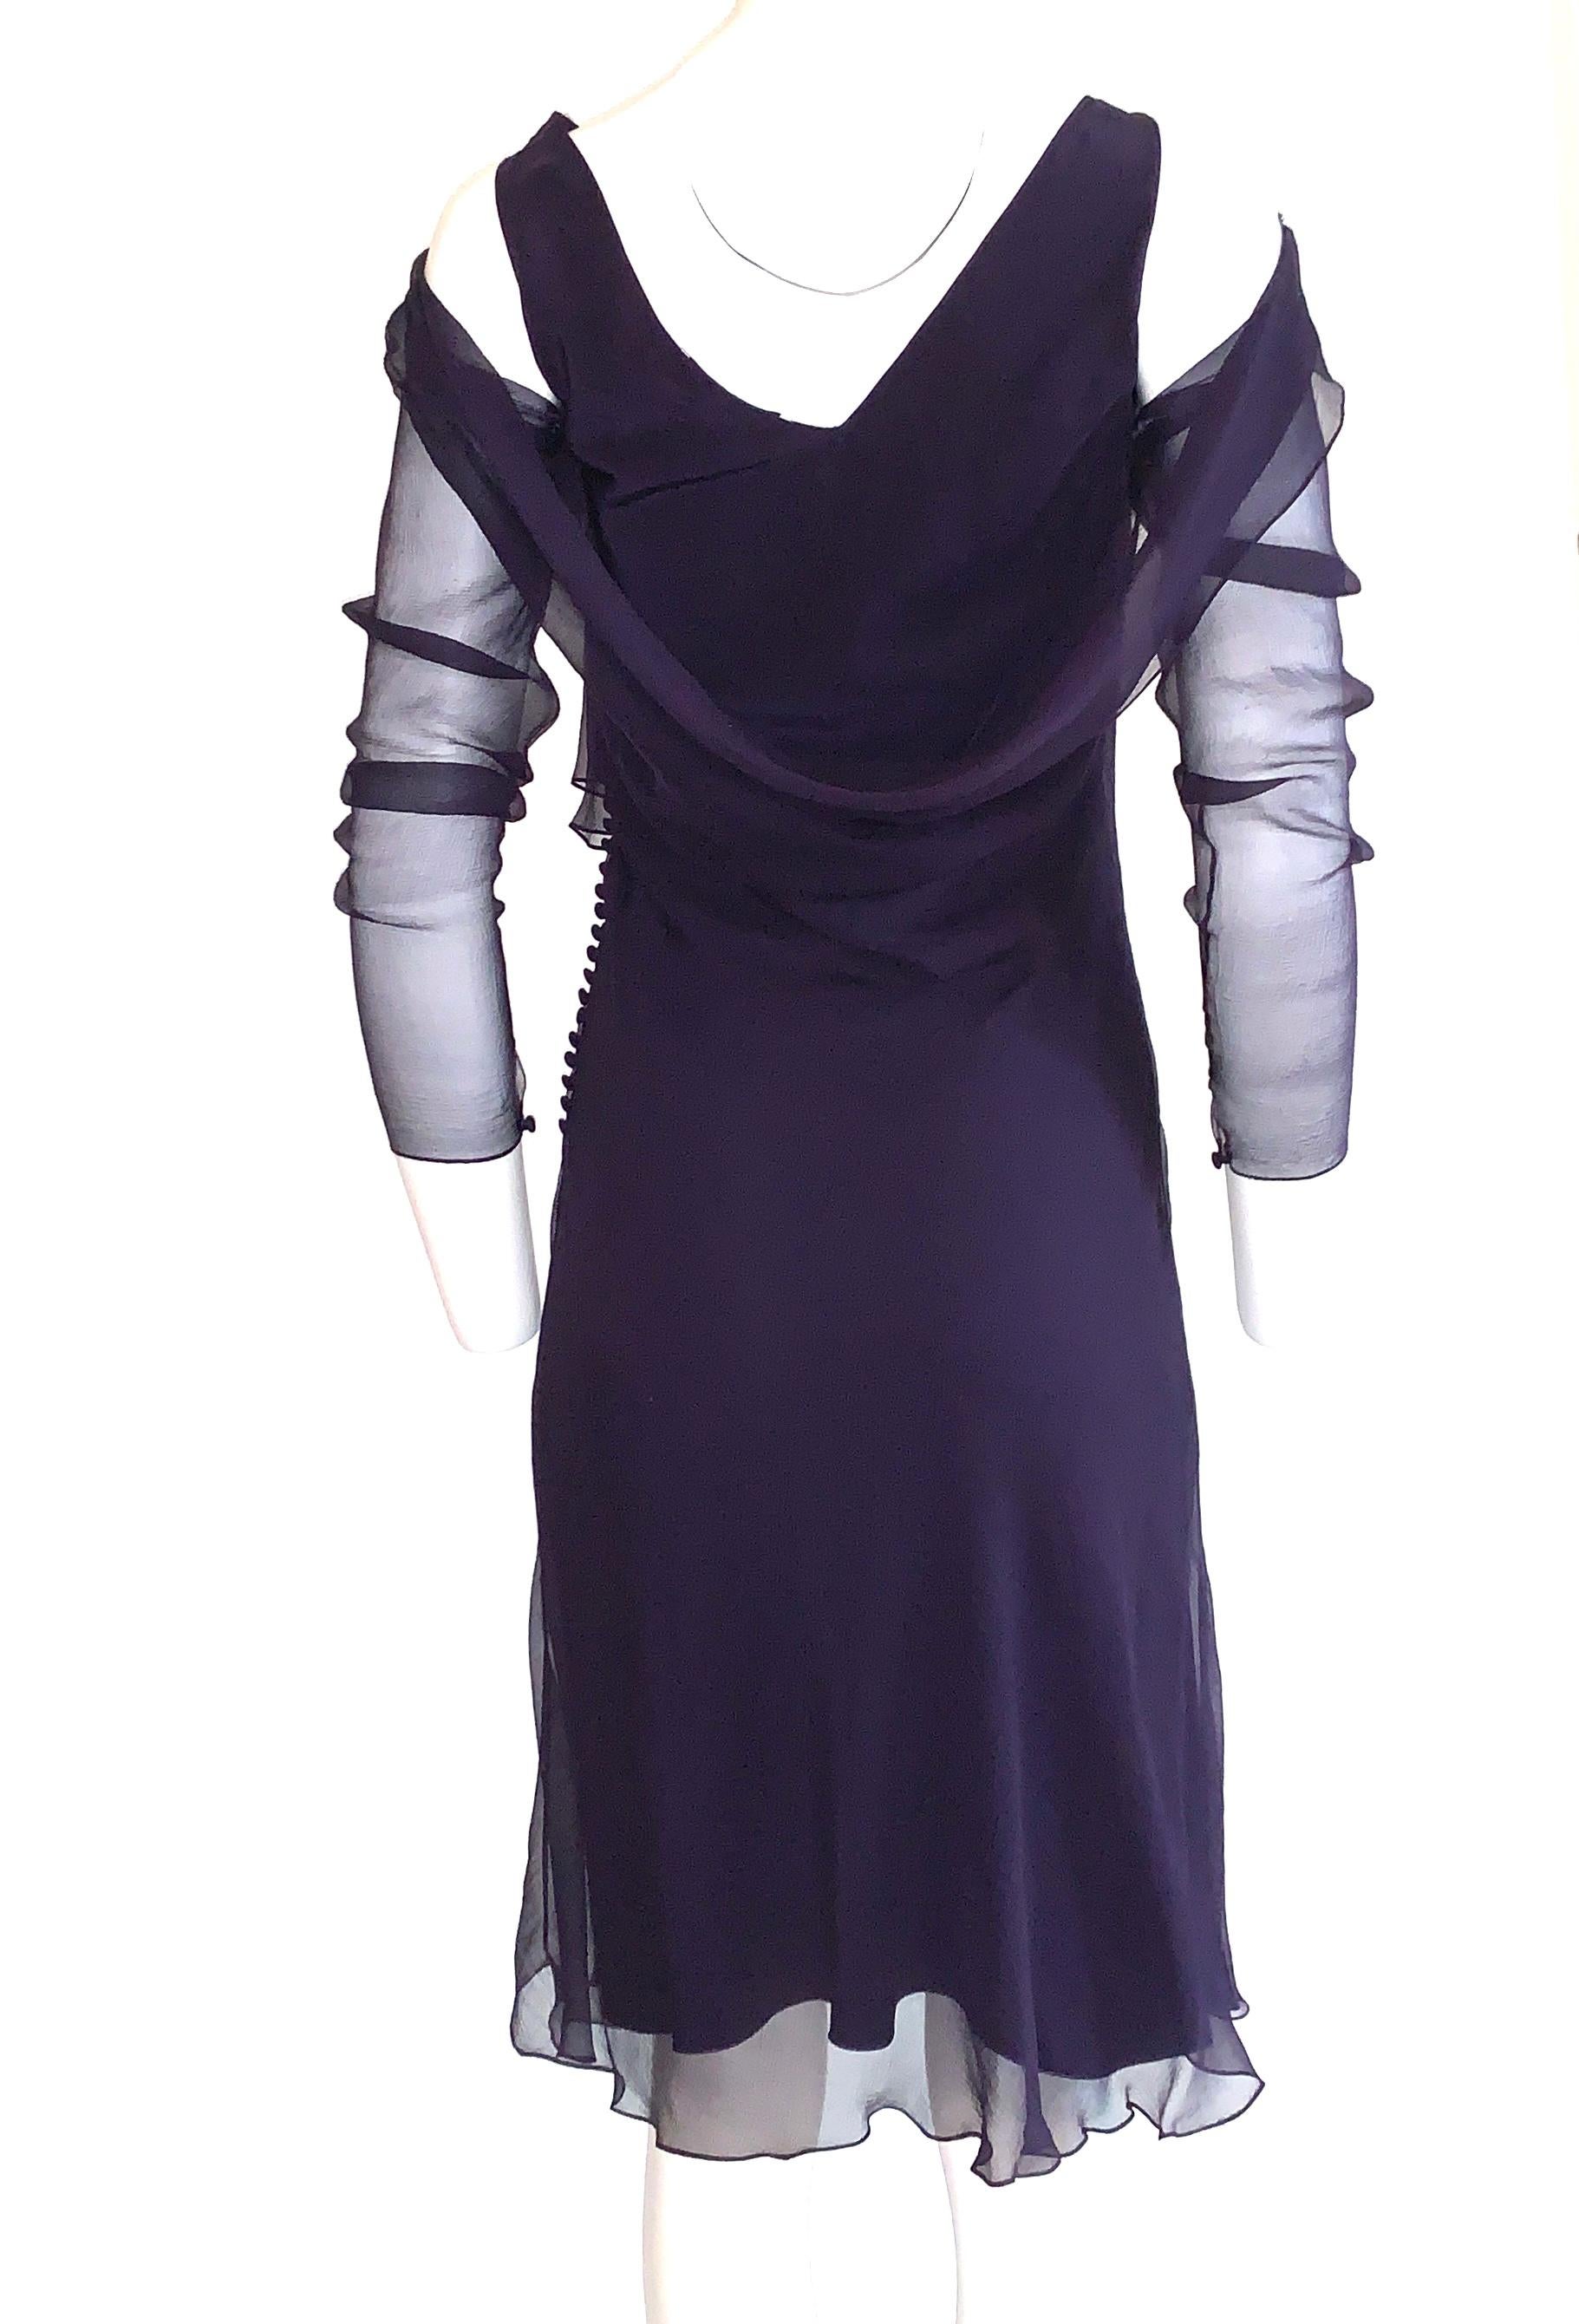 dior purple dress